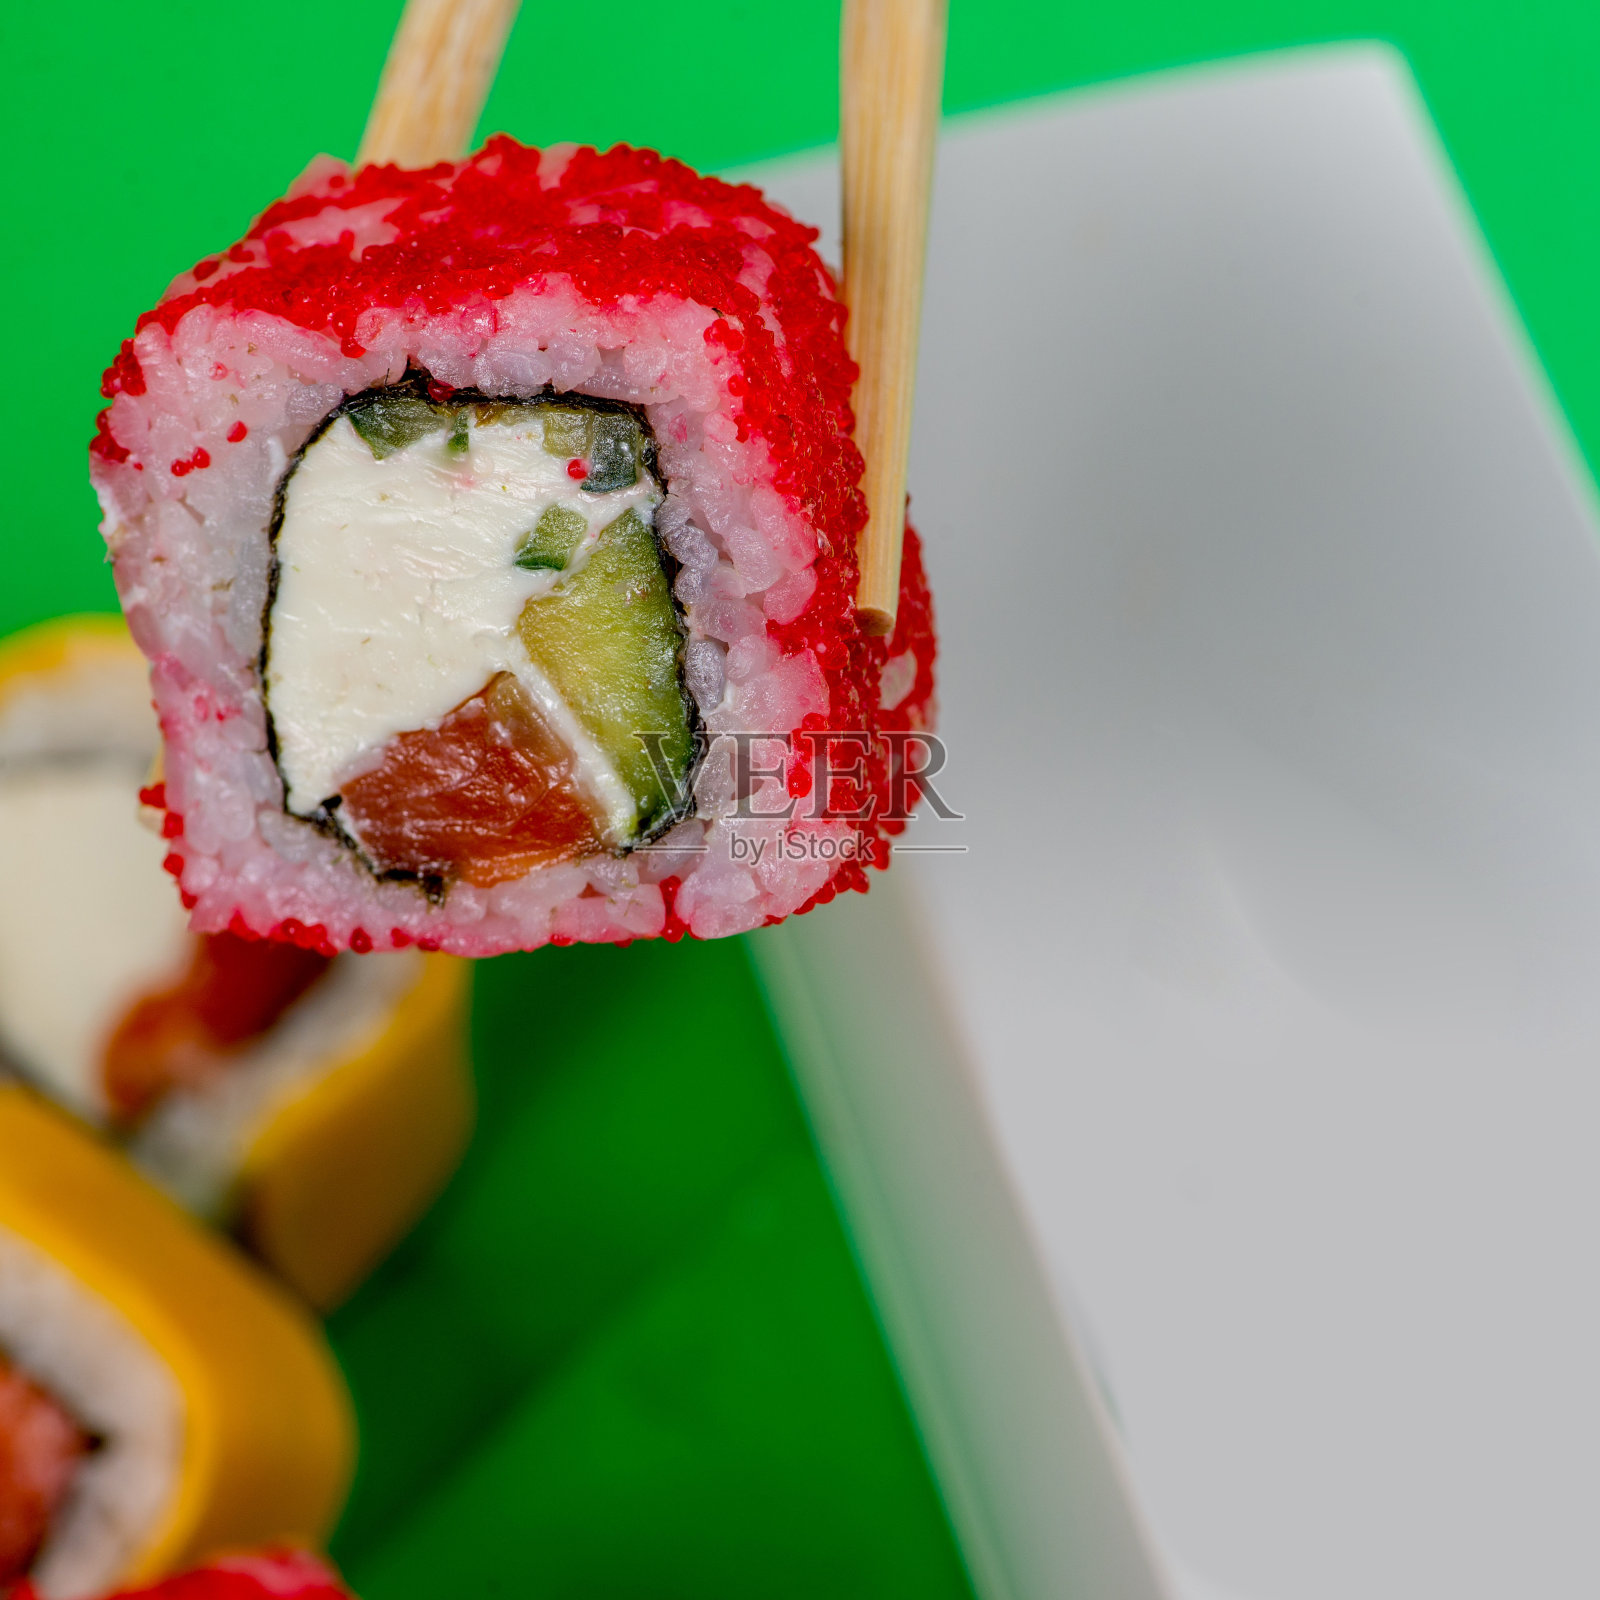 寿司配海鲜和奶油芝士是用筷子吃的。照片摄影图片